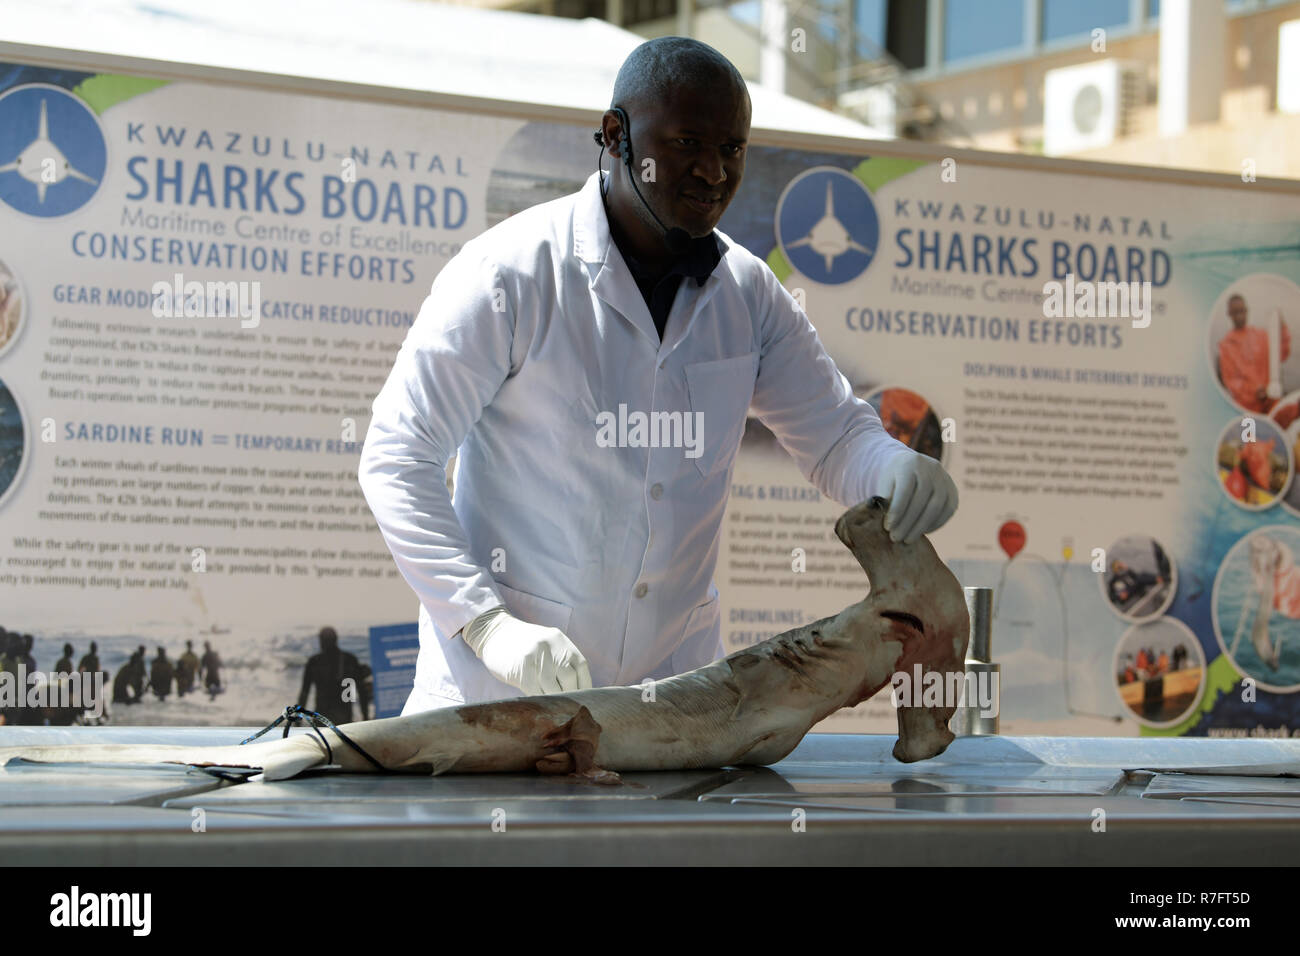 Durban, Südafrika, erwachsenen männlichen Techniker erklärt Hai Anatomie während der Zerlegung Präsentation von Natal Sharks Board, das Bewusstsein vom Aussterben bedrohte Tiere Stockfoto